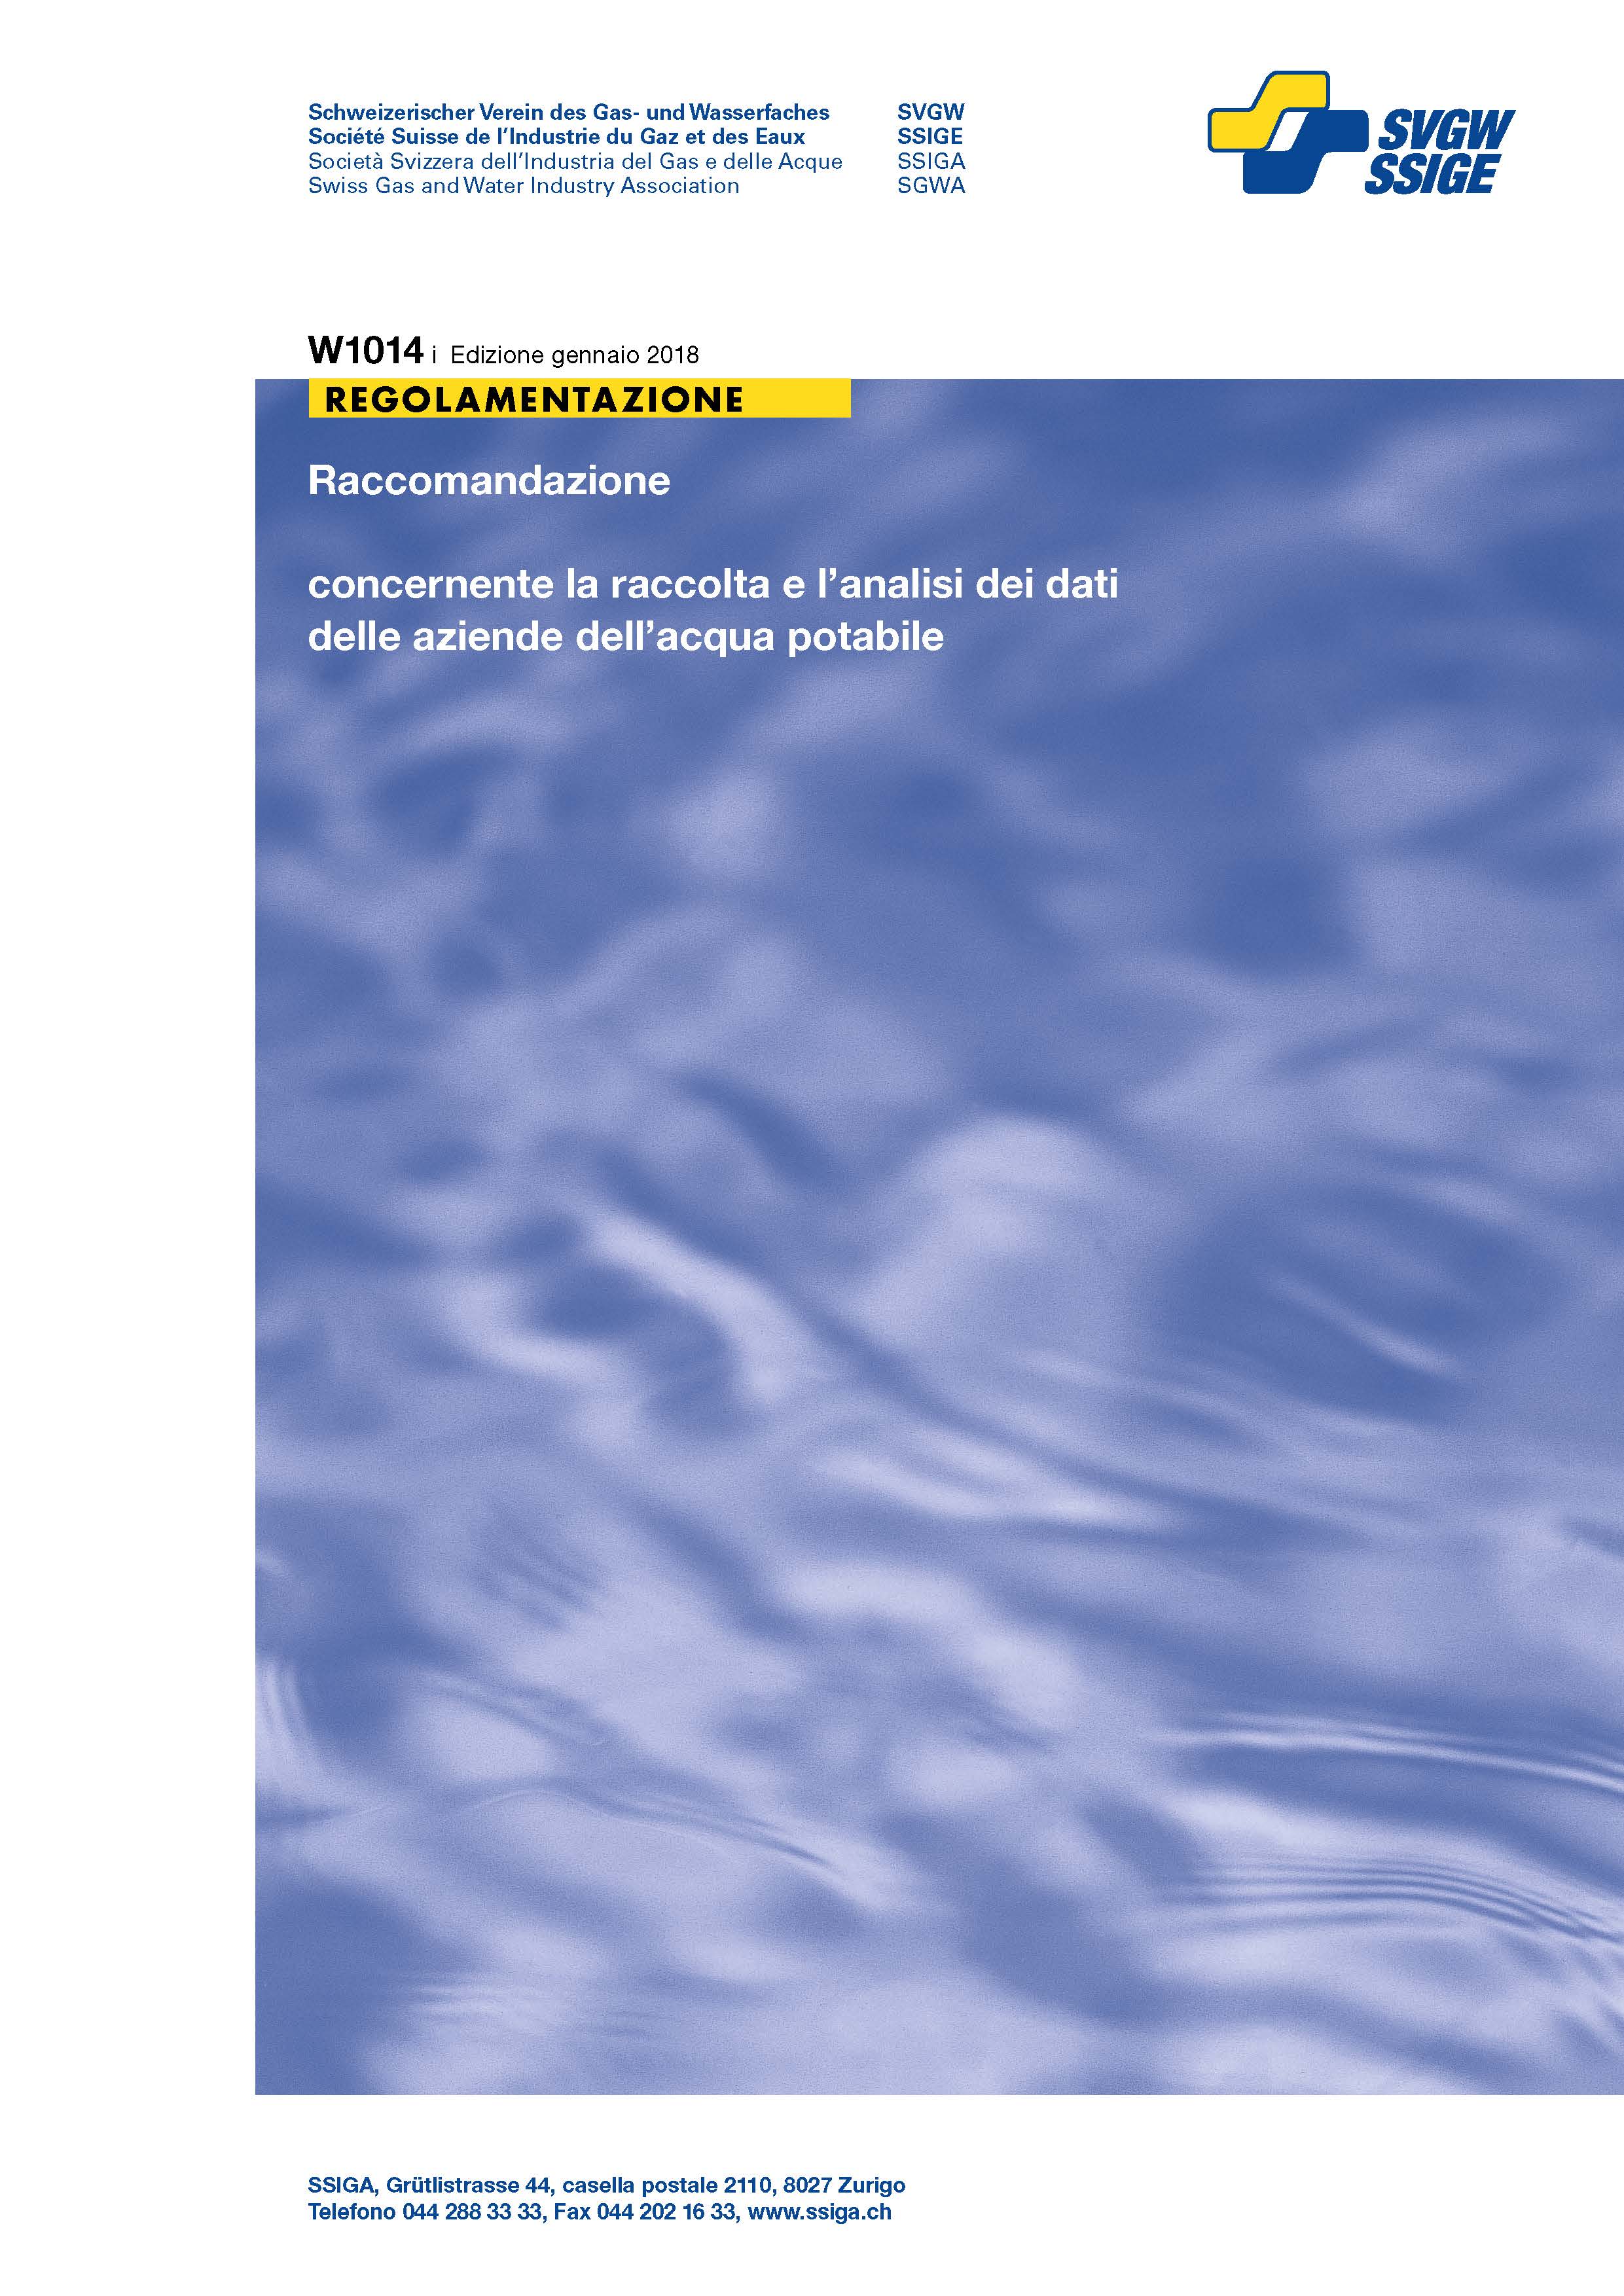 W1014 i Raccomandazione concernente la raccolta e l'analisi dei dati delle aziende dell'acqua potabile (2)